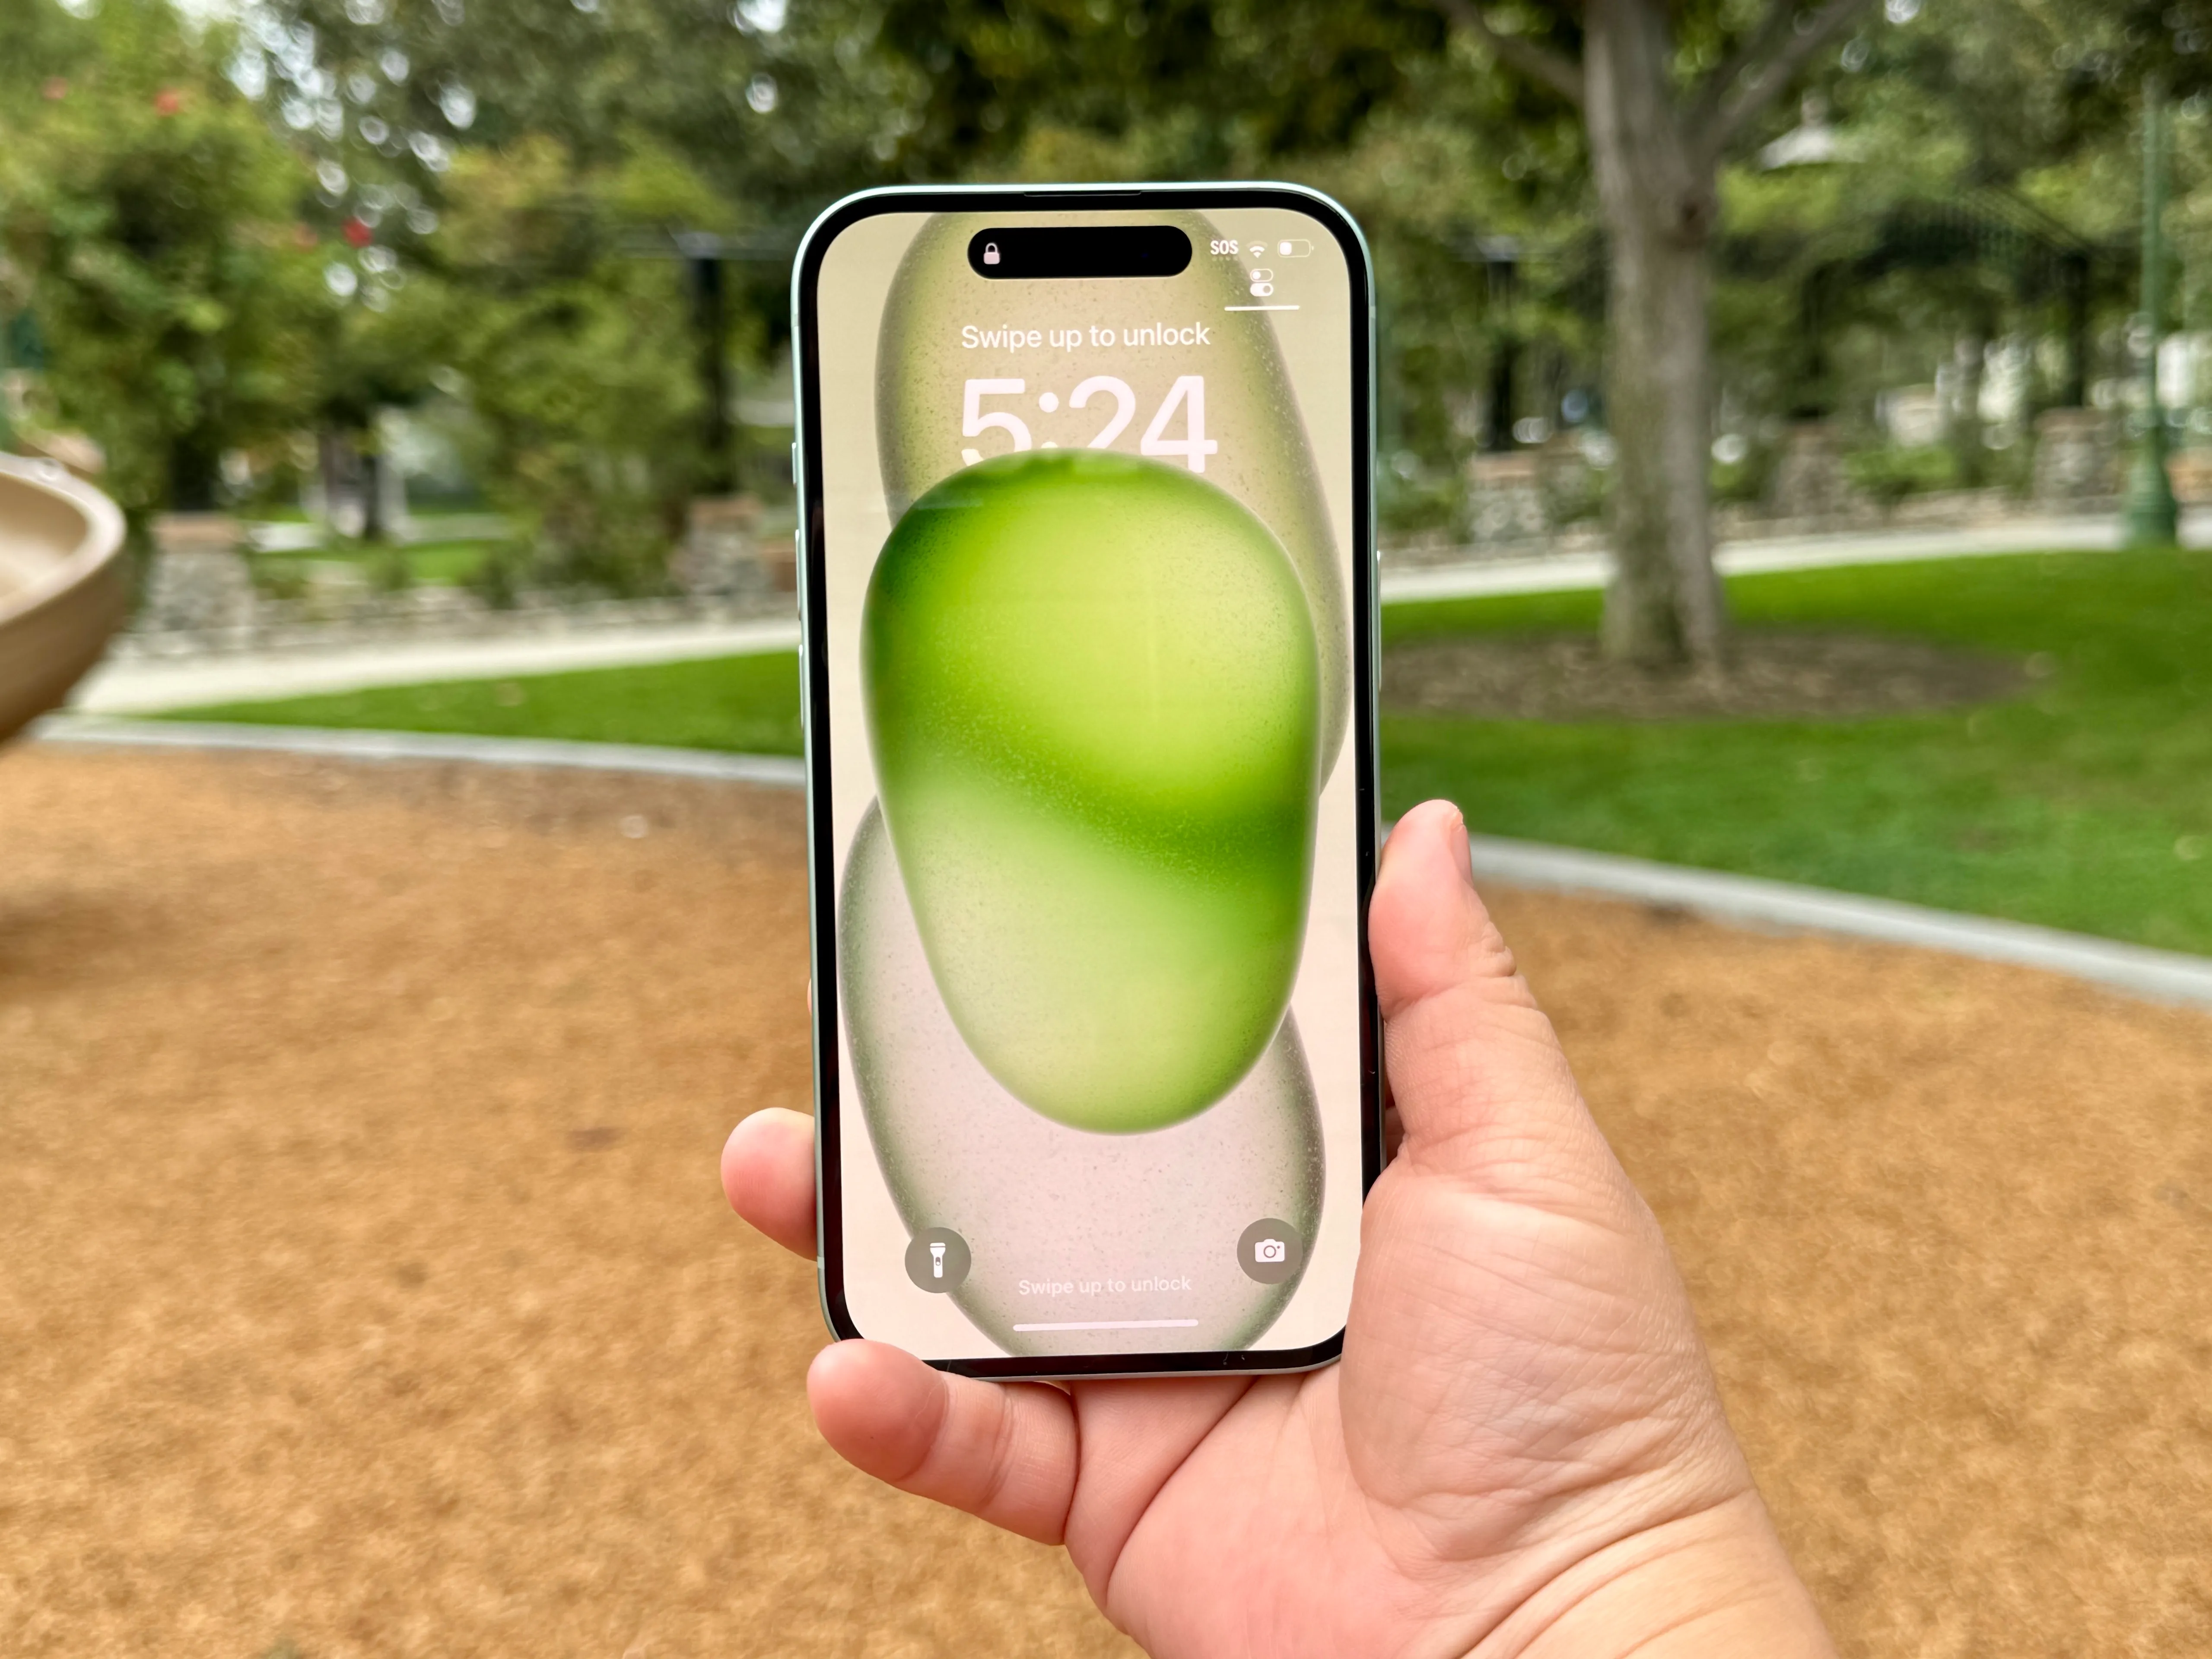 绿色的 iPhone 15 锁屏界面。